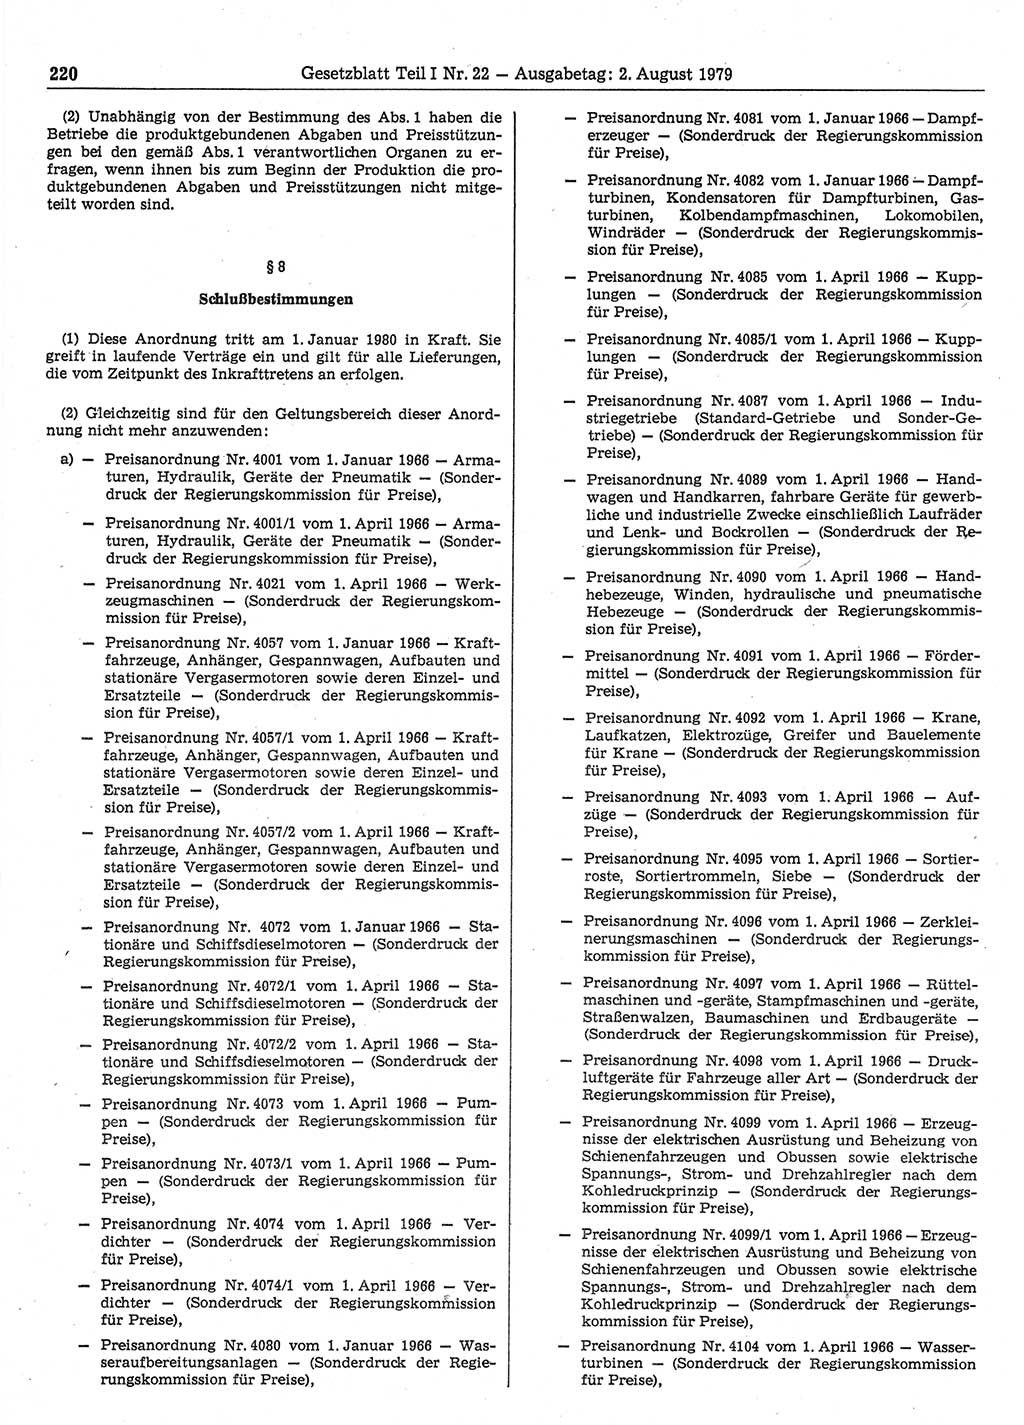 Gesetzblatt (GBl.) der Deutschen Demokratischen Republik (DDR) Teil Ⅰ 1979, Seite 220 (GBl. DDR Ⅰ 1979, S. 220)